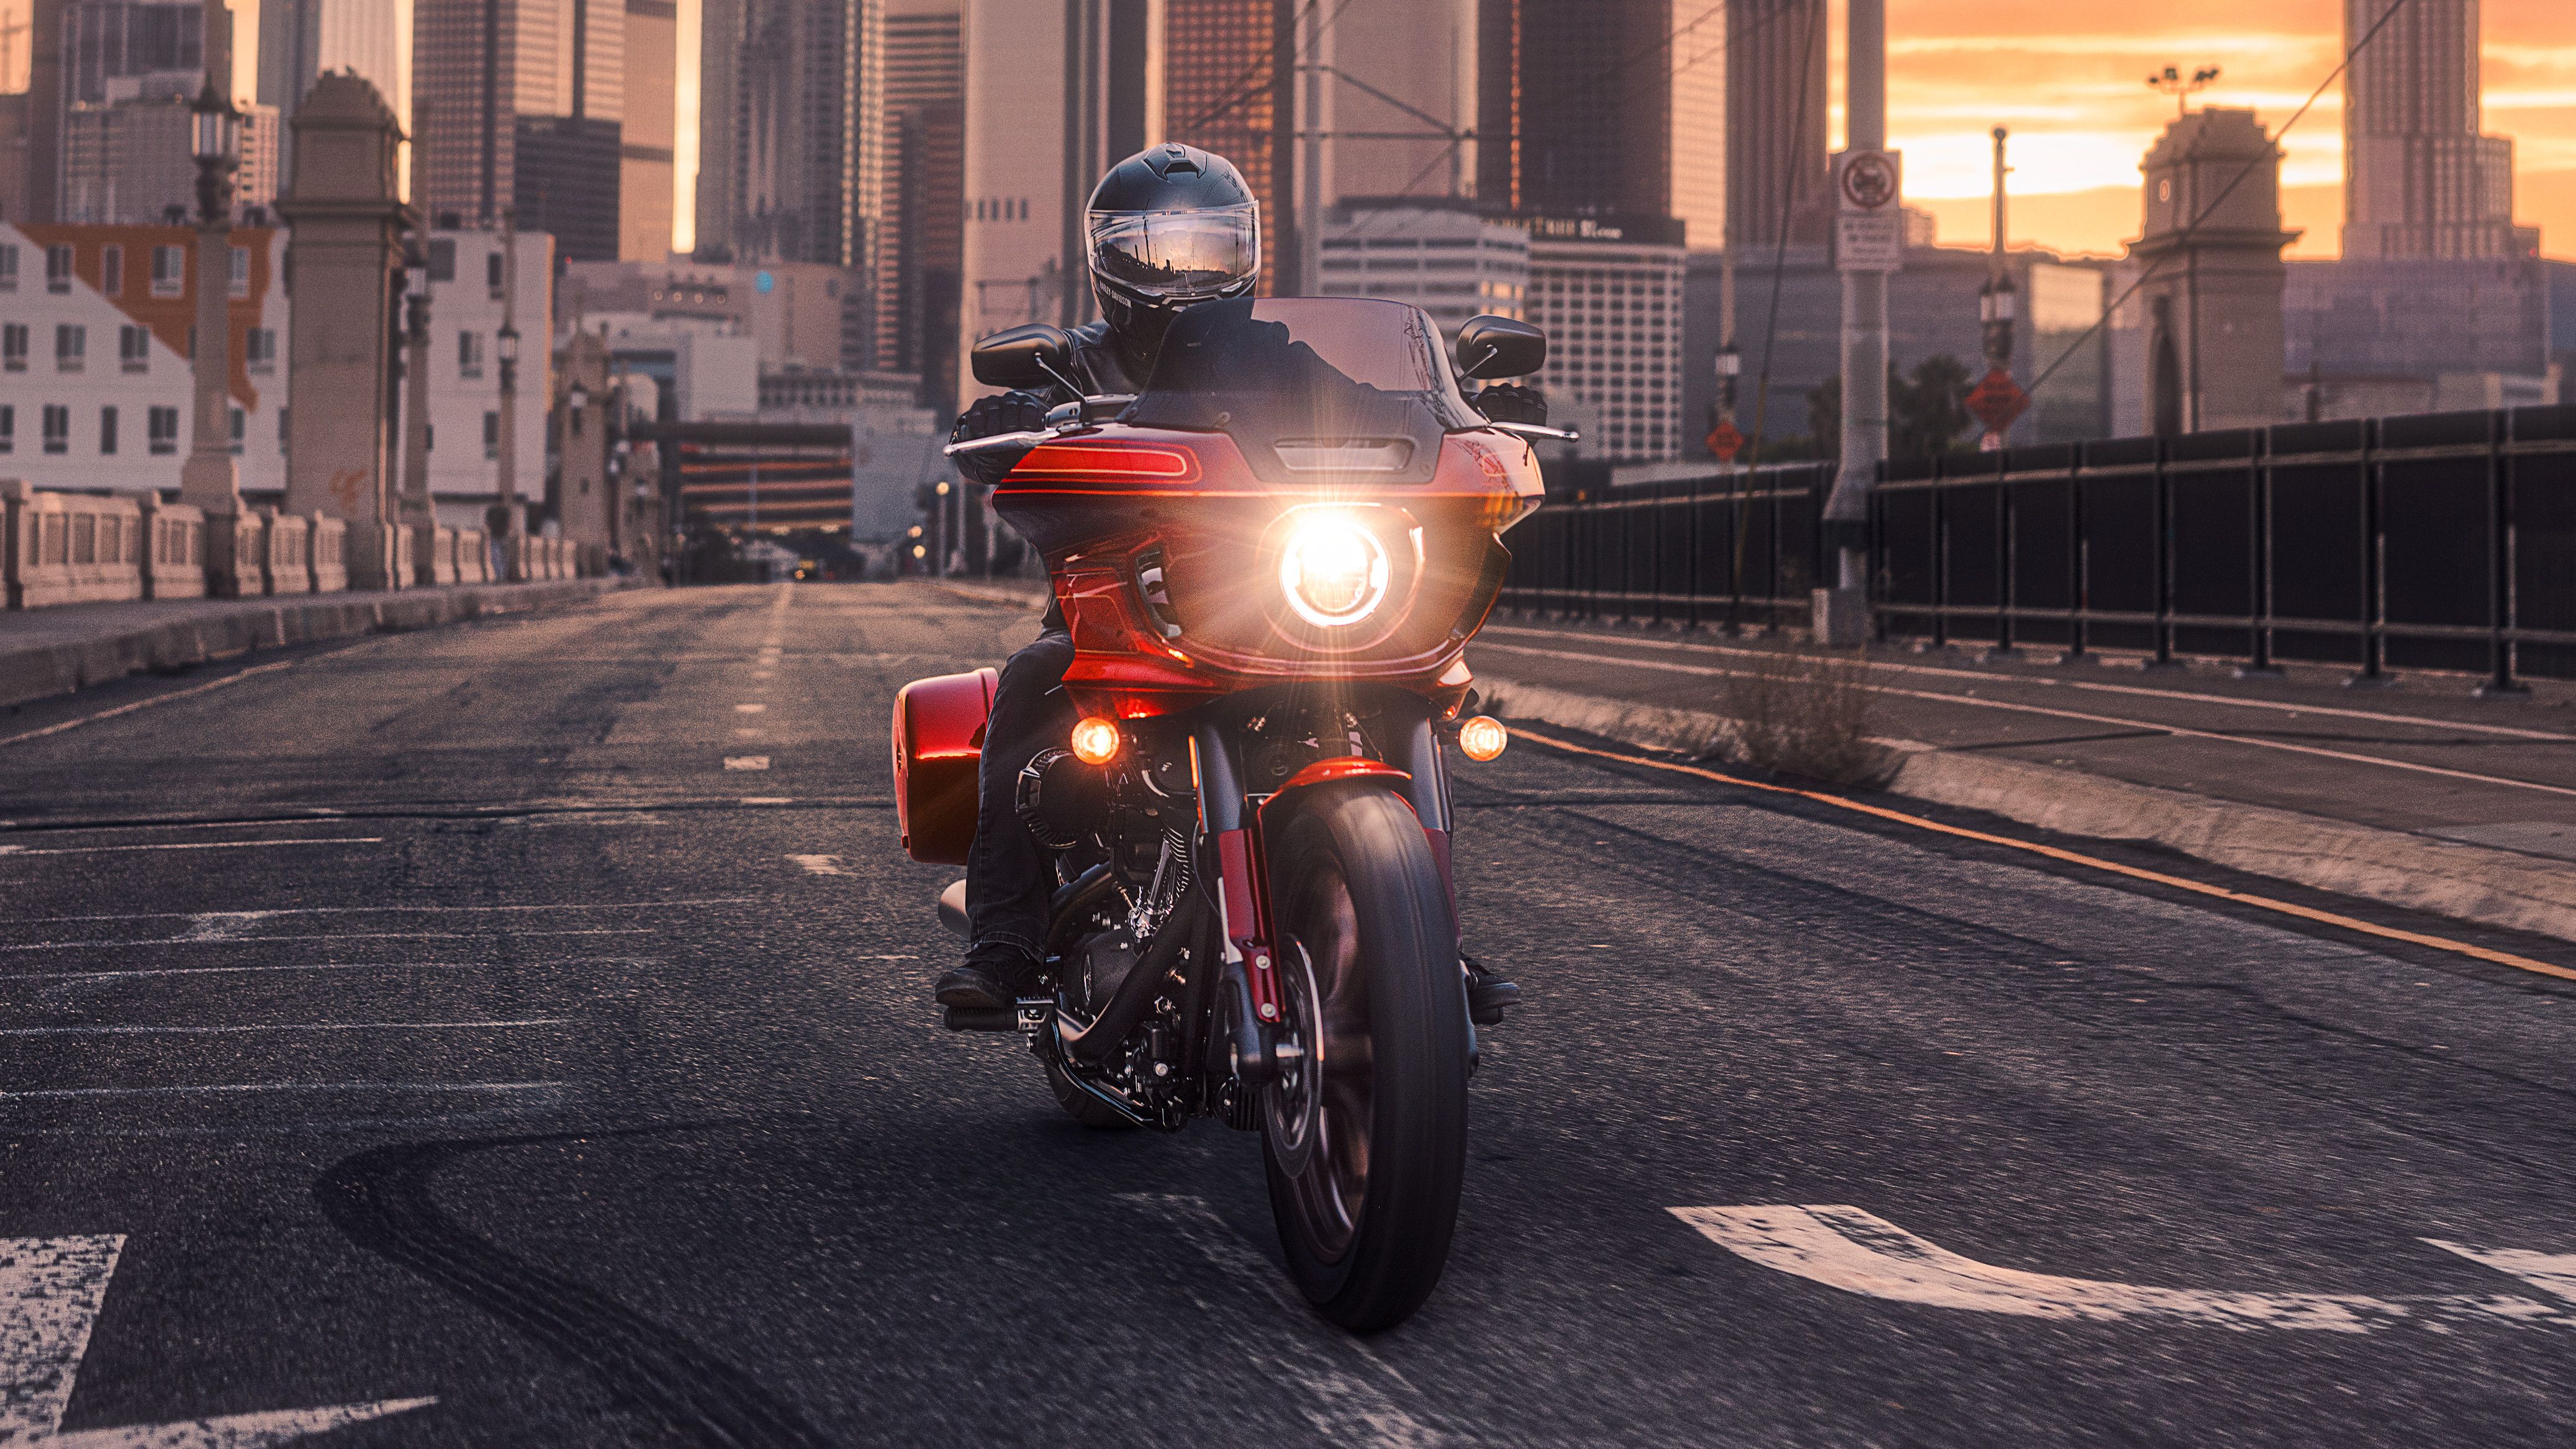 2022 Harley-Davidson Low Rider El Diablo riding in the city